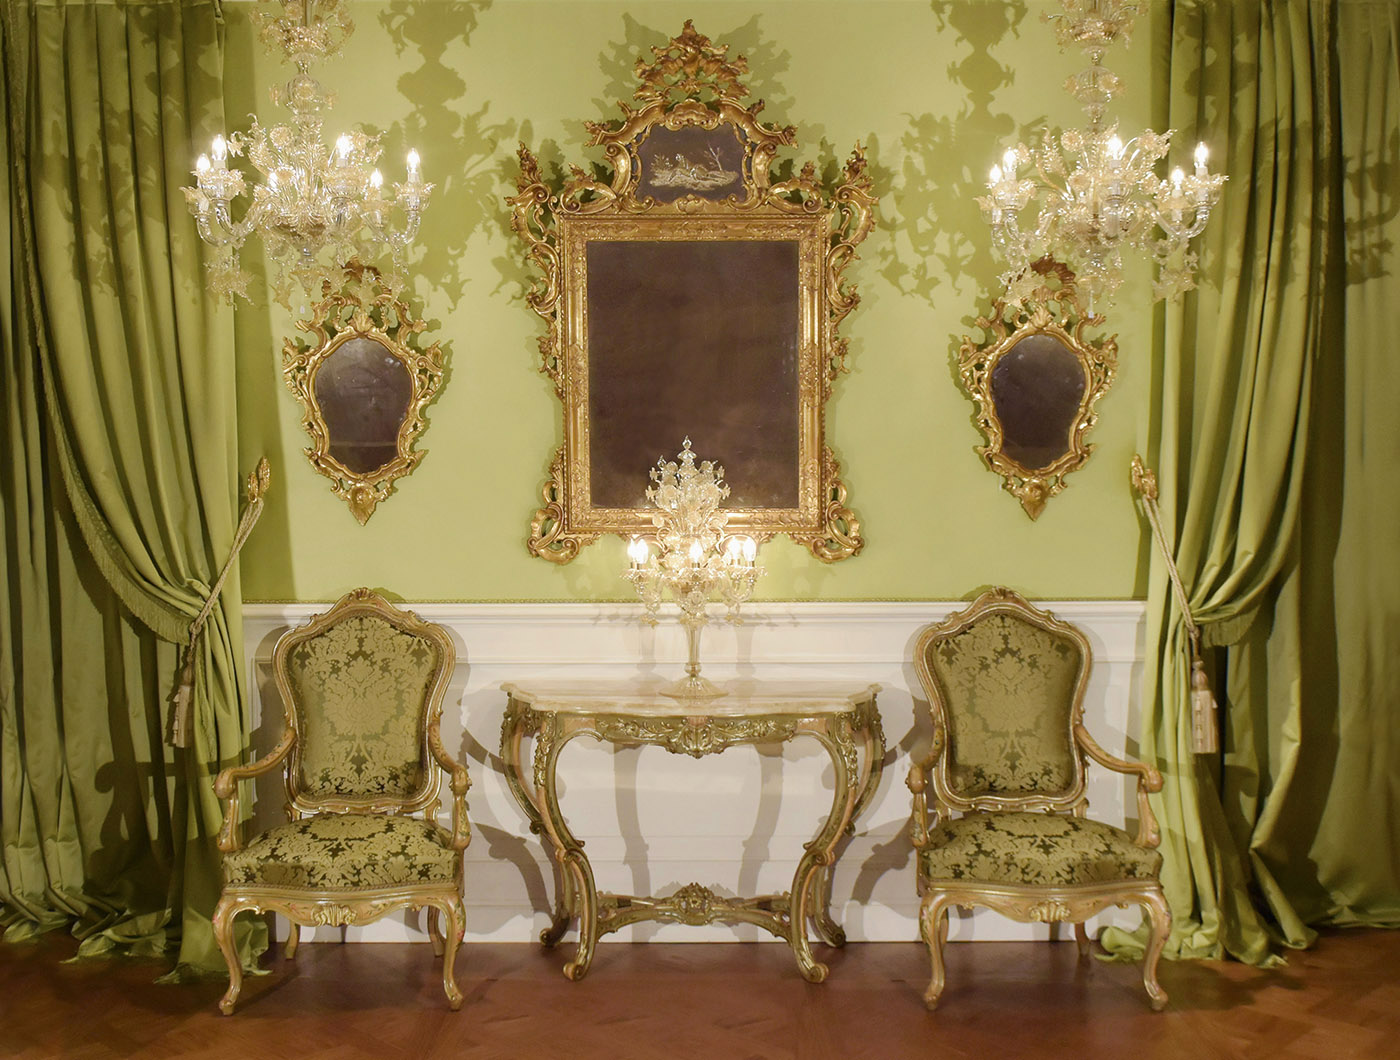 Venetian baroque throne, Venetian baroque mirror, Louis XV consolle, Venetian flambeau, Murano chandeliere, classical lambris | P.& G. Cugini Lanzani